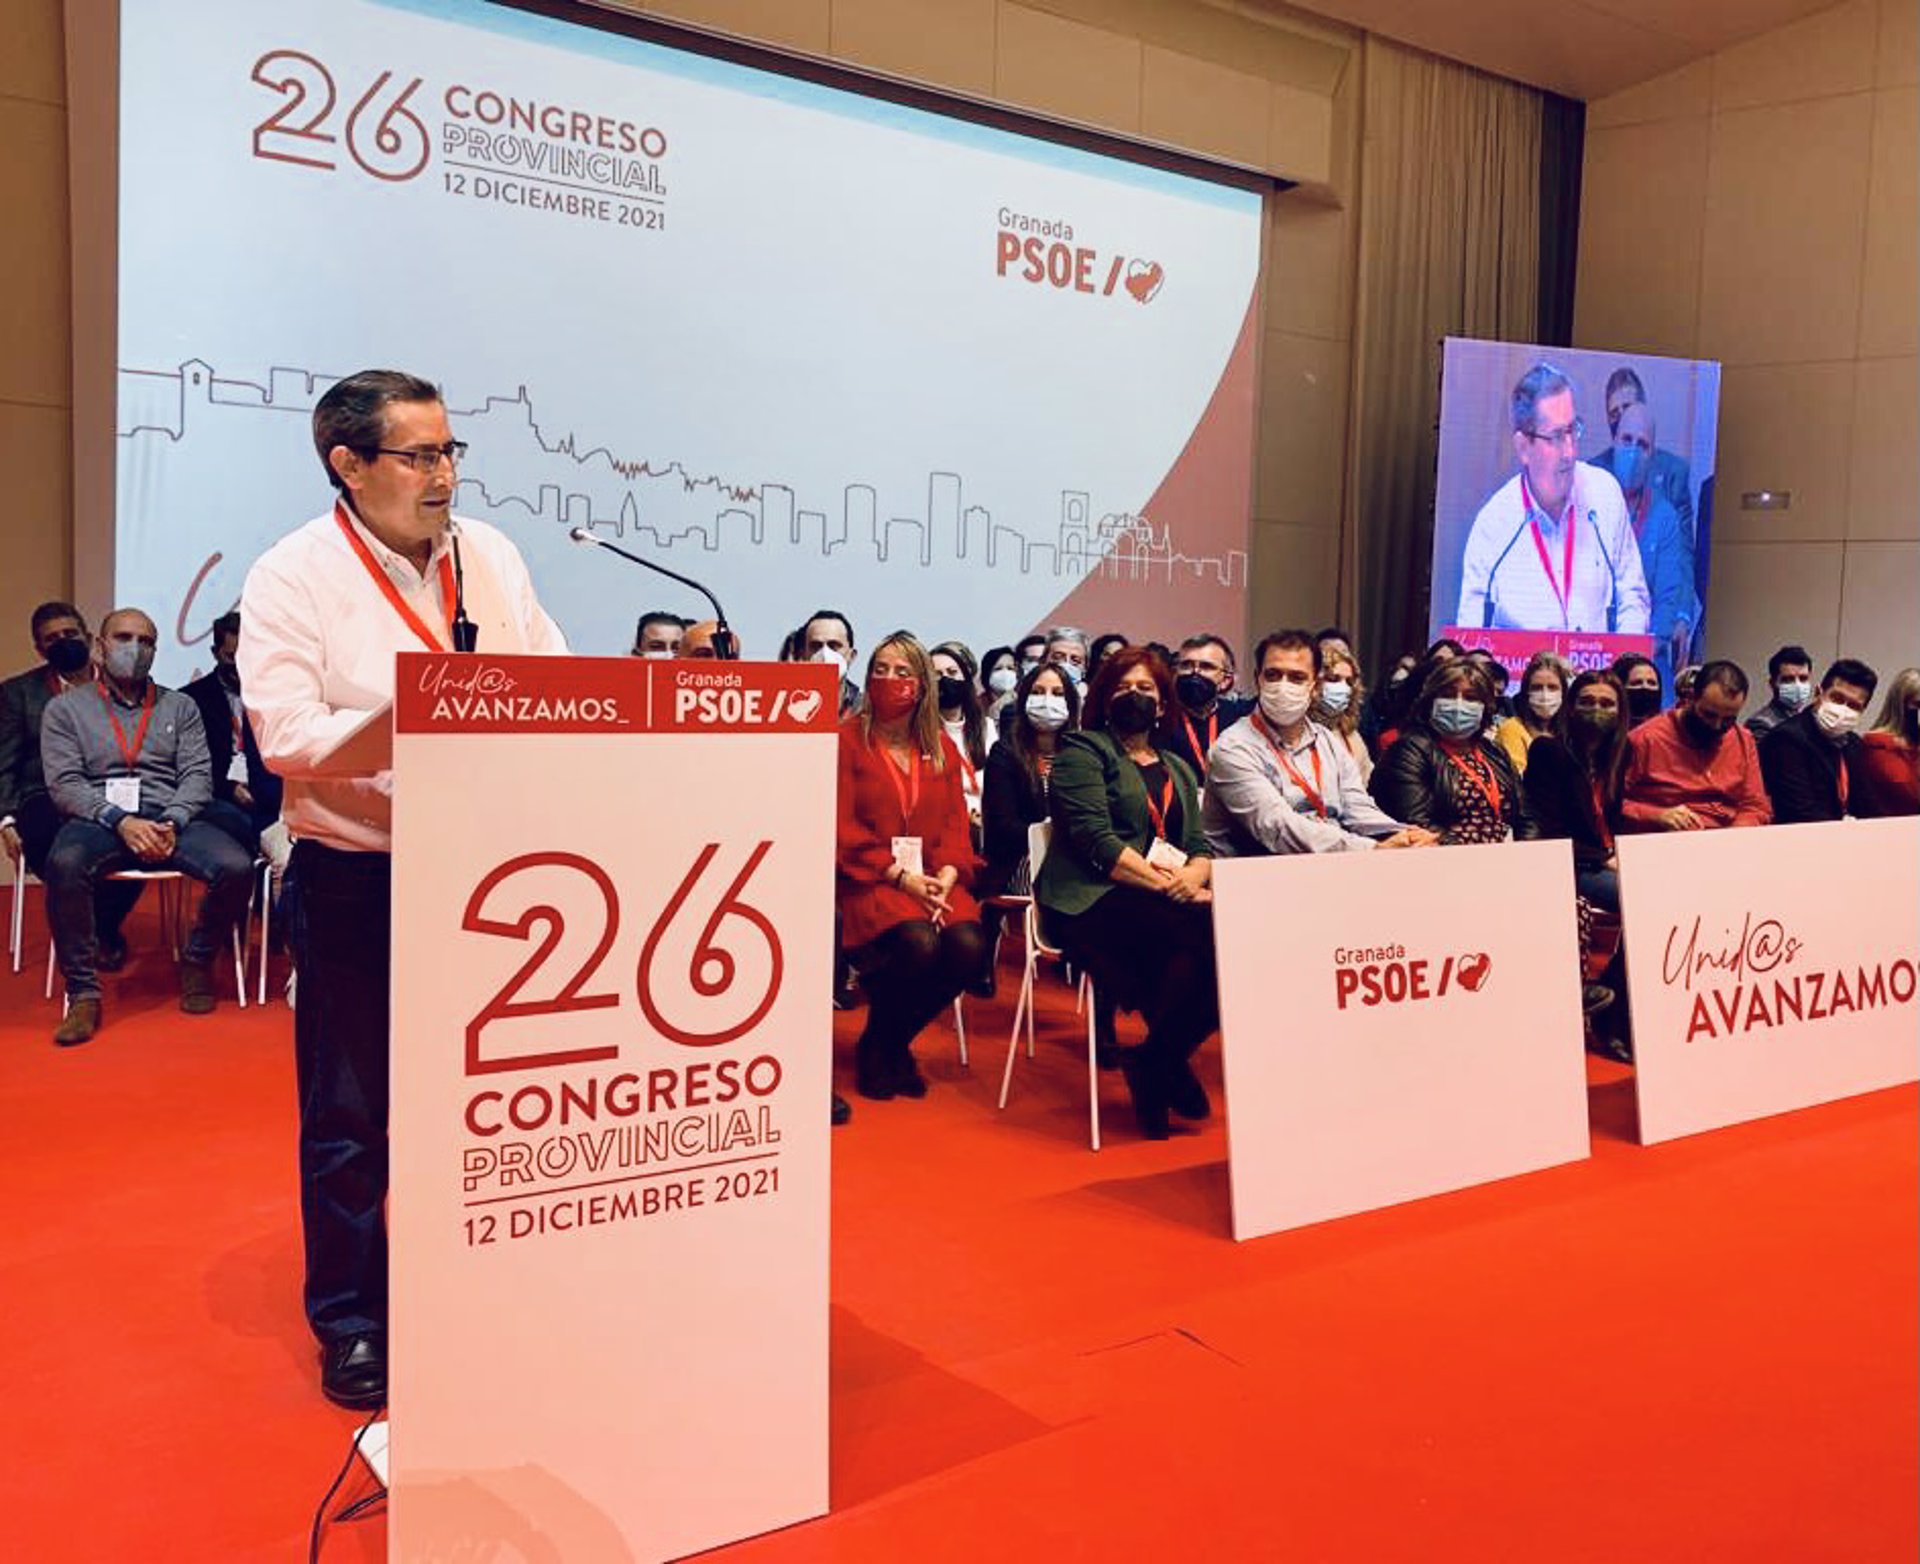 Entrena logra un 90 por ciento de apoyo a la nueva ejecutiva del PSOE y pide un progreso justo y «sostenible»